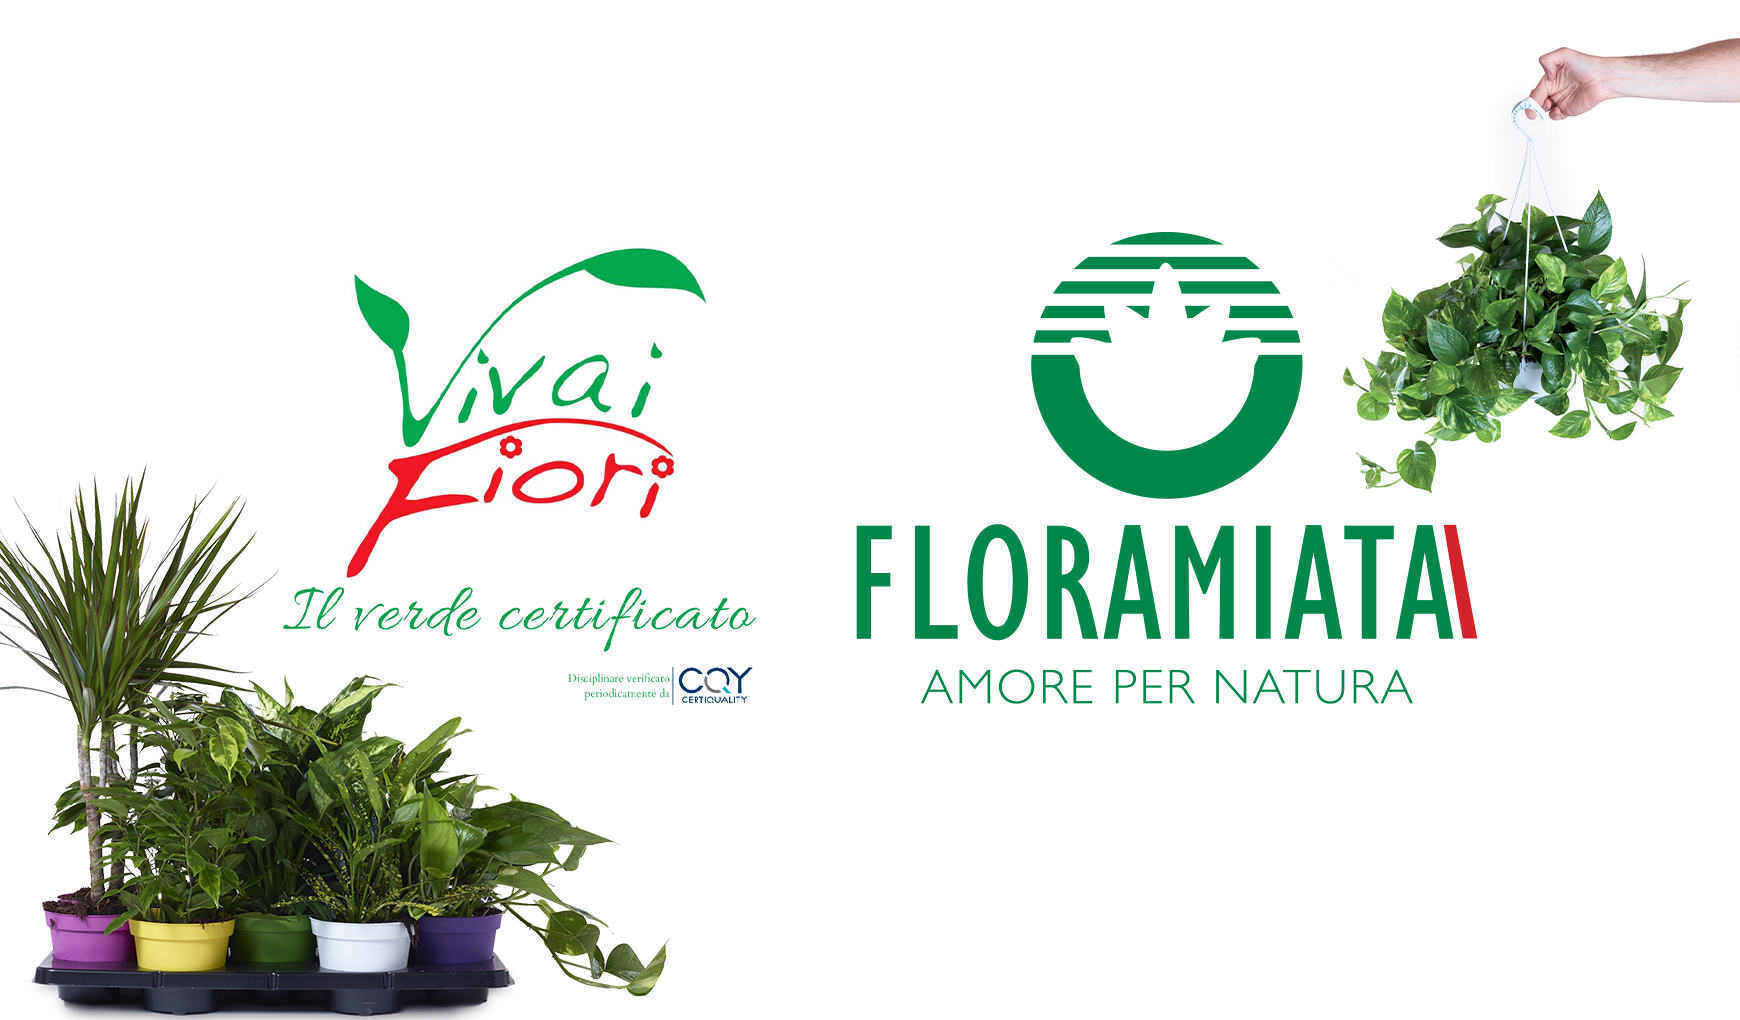 Floramiata e VivaiFiori per garantire qualità e sostenibilità